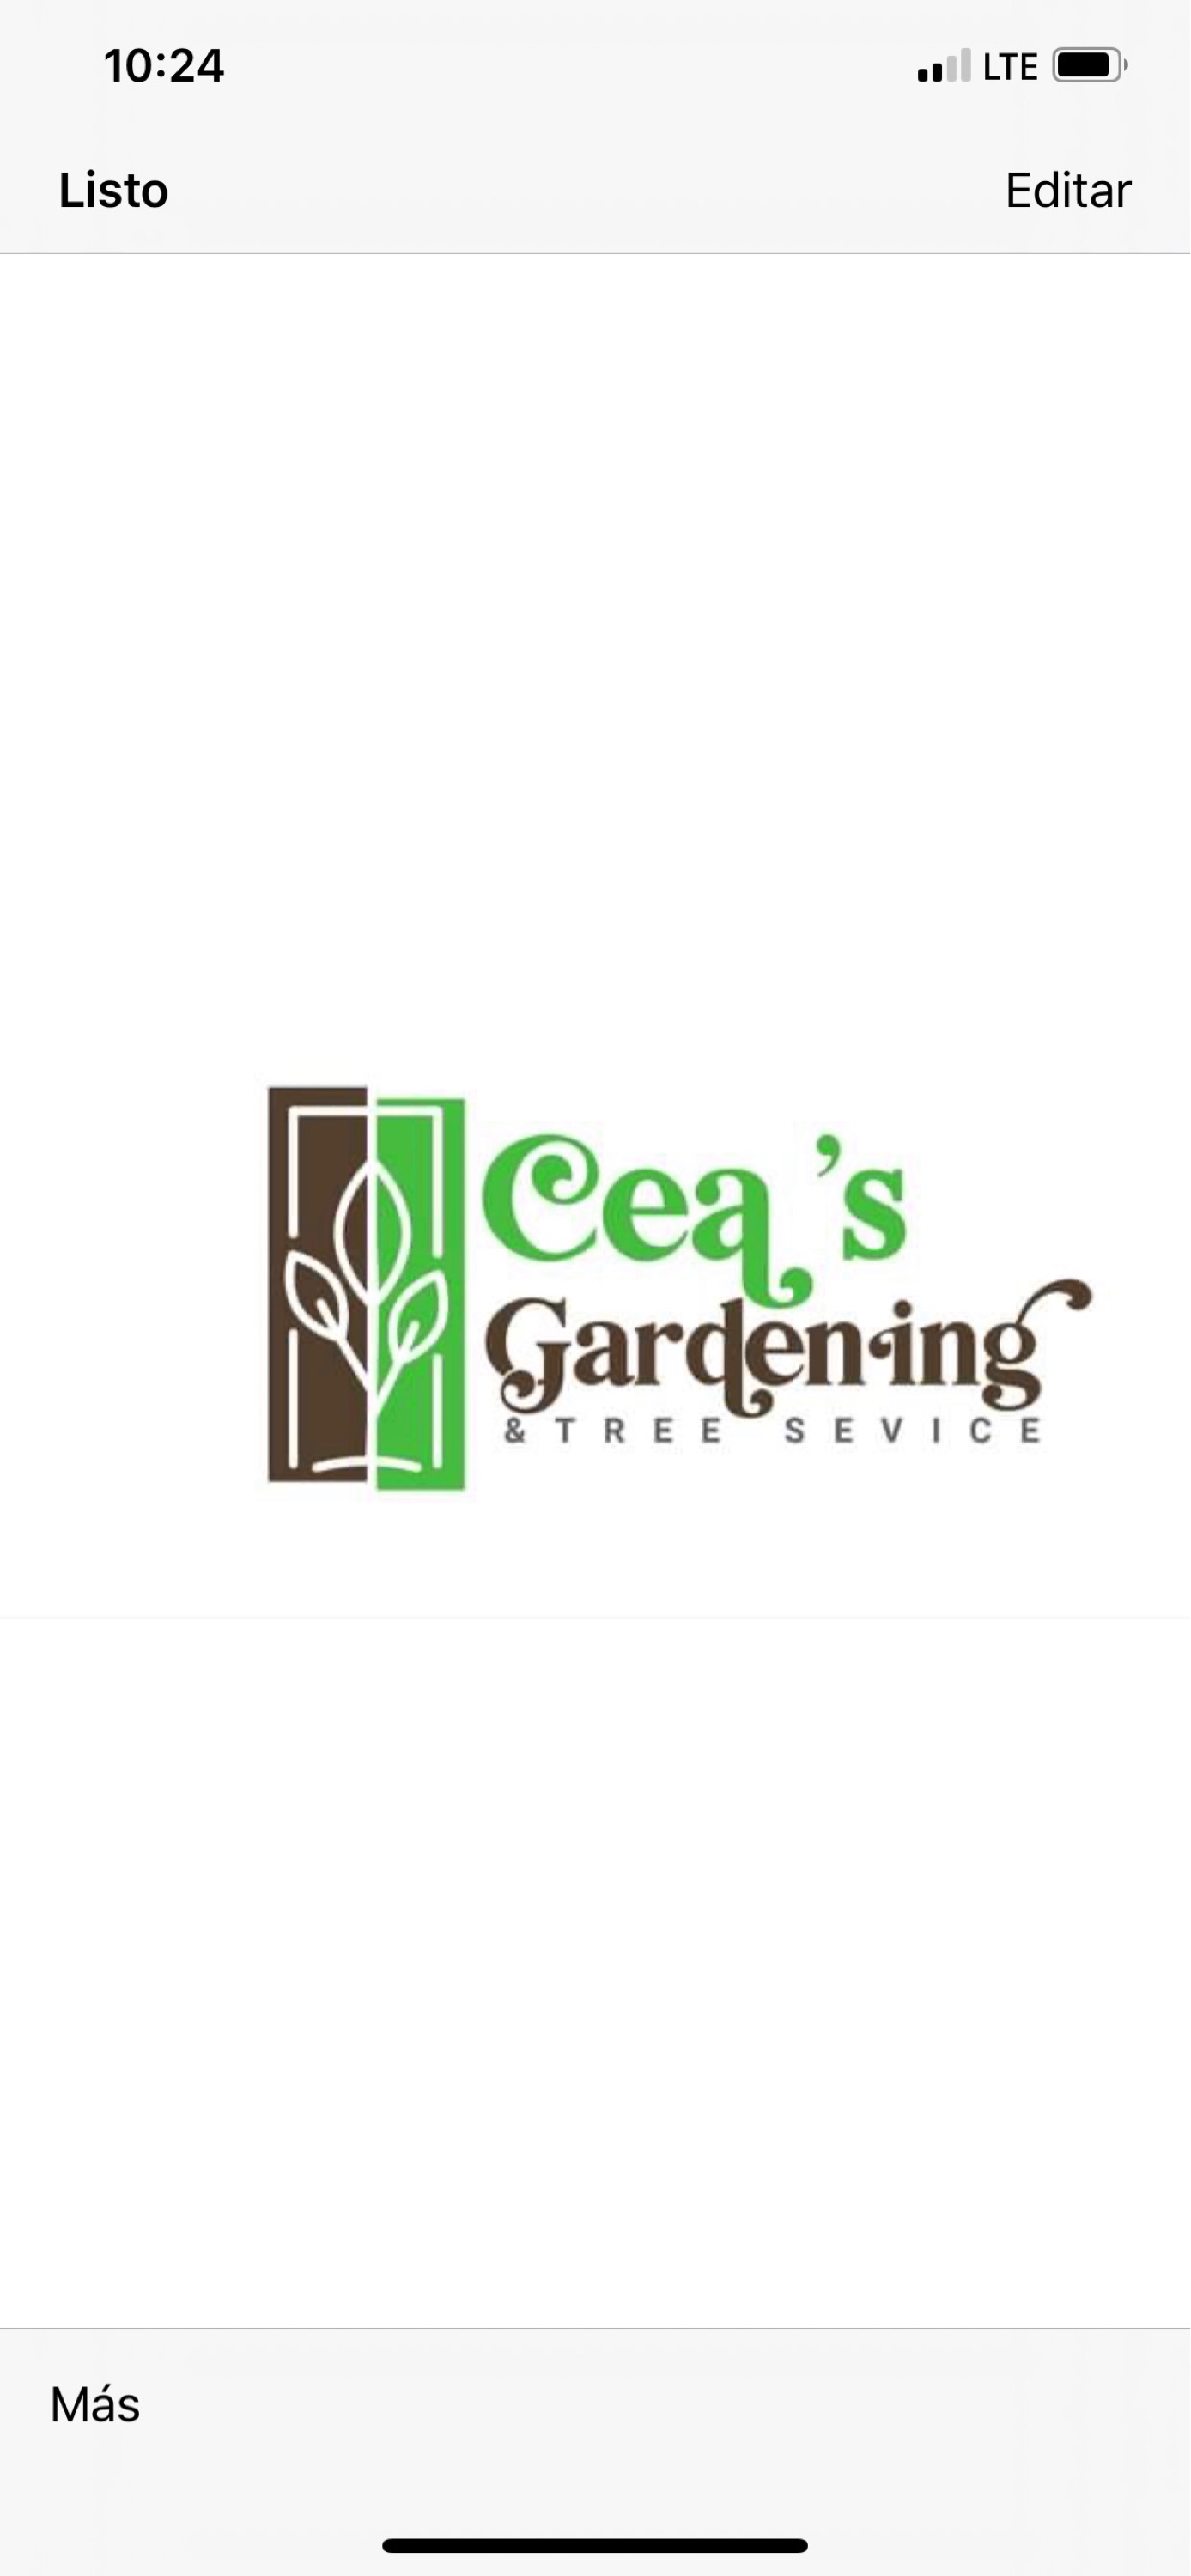 Cea's Gardening - Unlicensed Contractor Logo